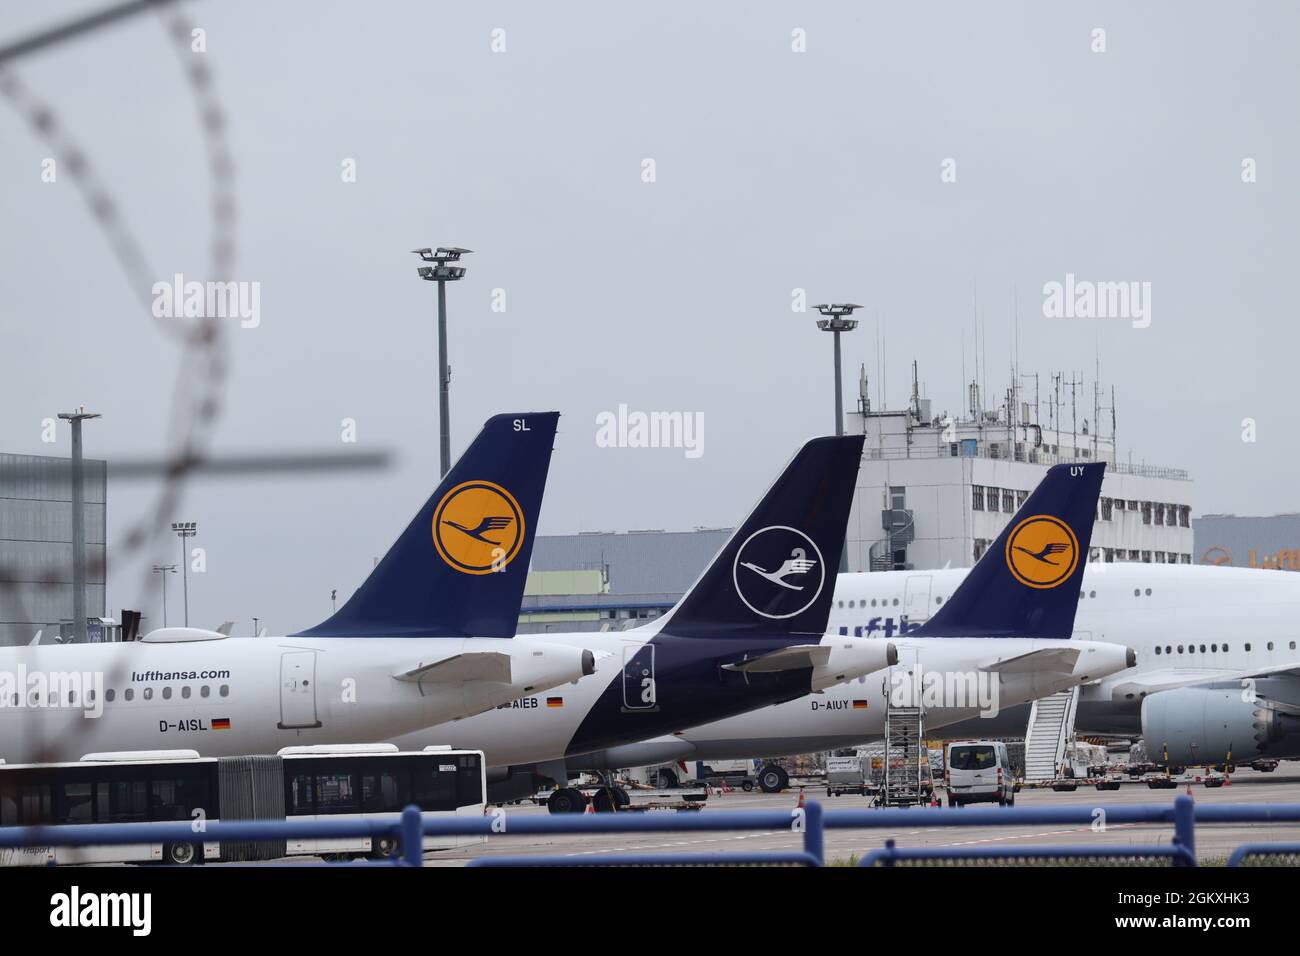 AÉROPORT DE FRANCFORT, ALLEMAGNE - 11 juillet 2021 : les avions de Lufthansa Airlines à l'aéroport de Francfort en Allemagne en un jour sombre Banque D'Images